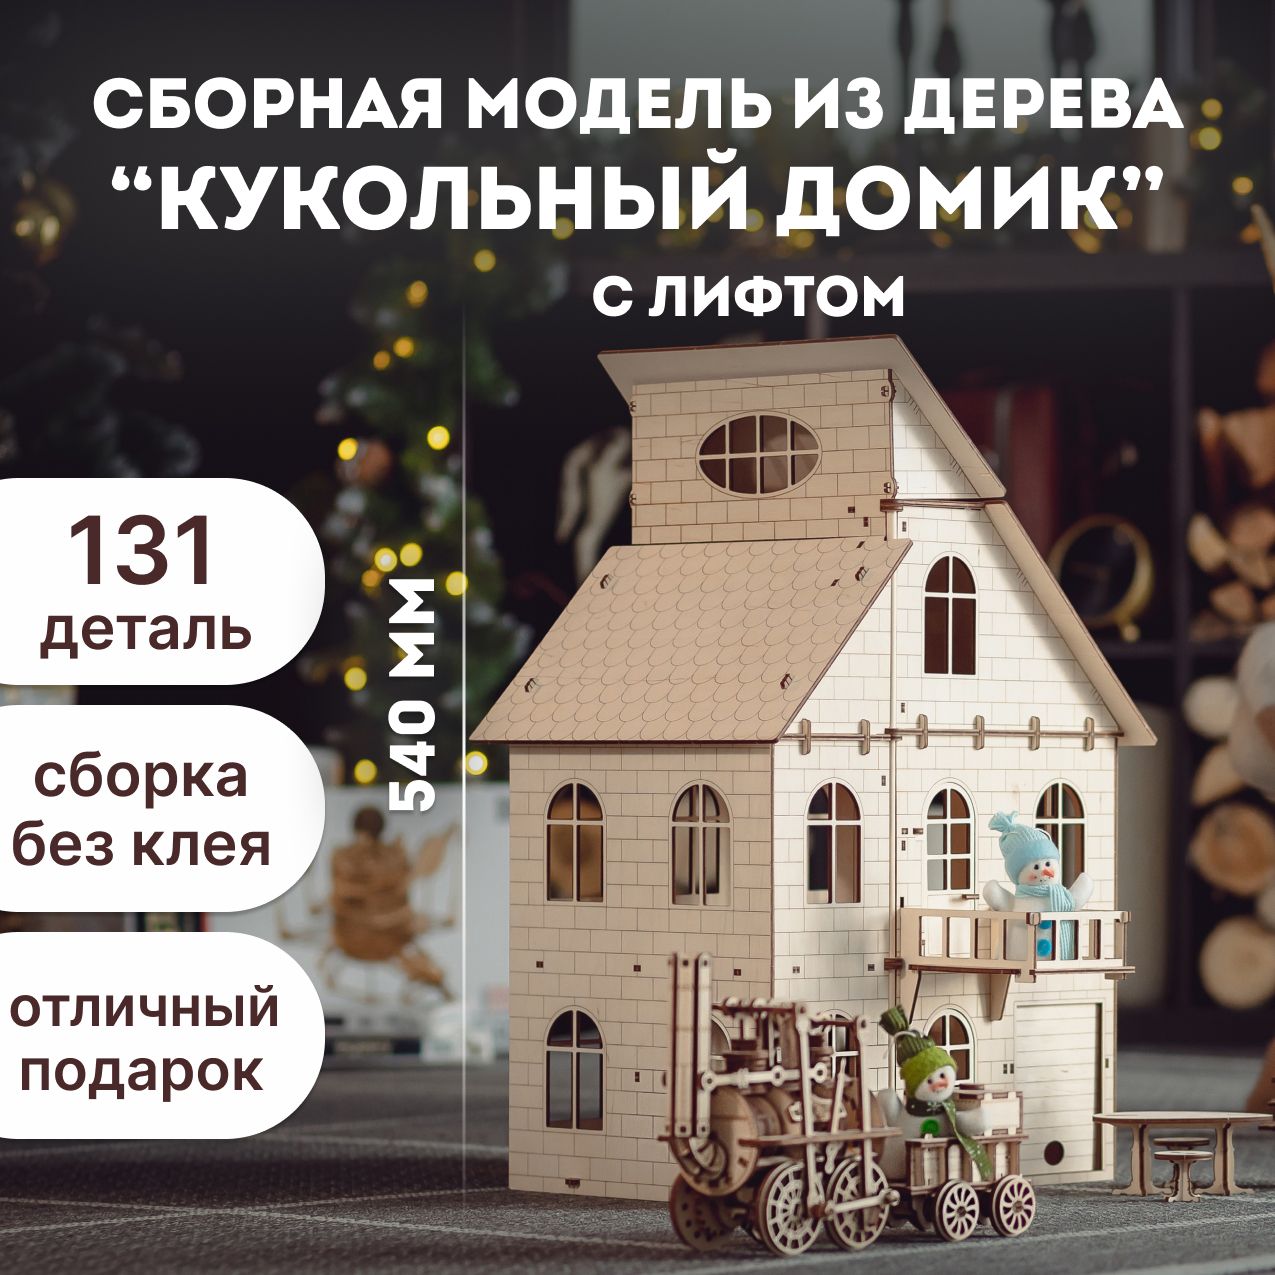 Кукольный домик своими руками: пошаговая инструкция с фото и готовой схемой